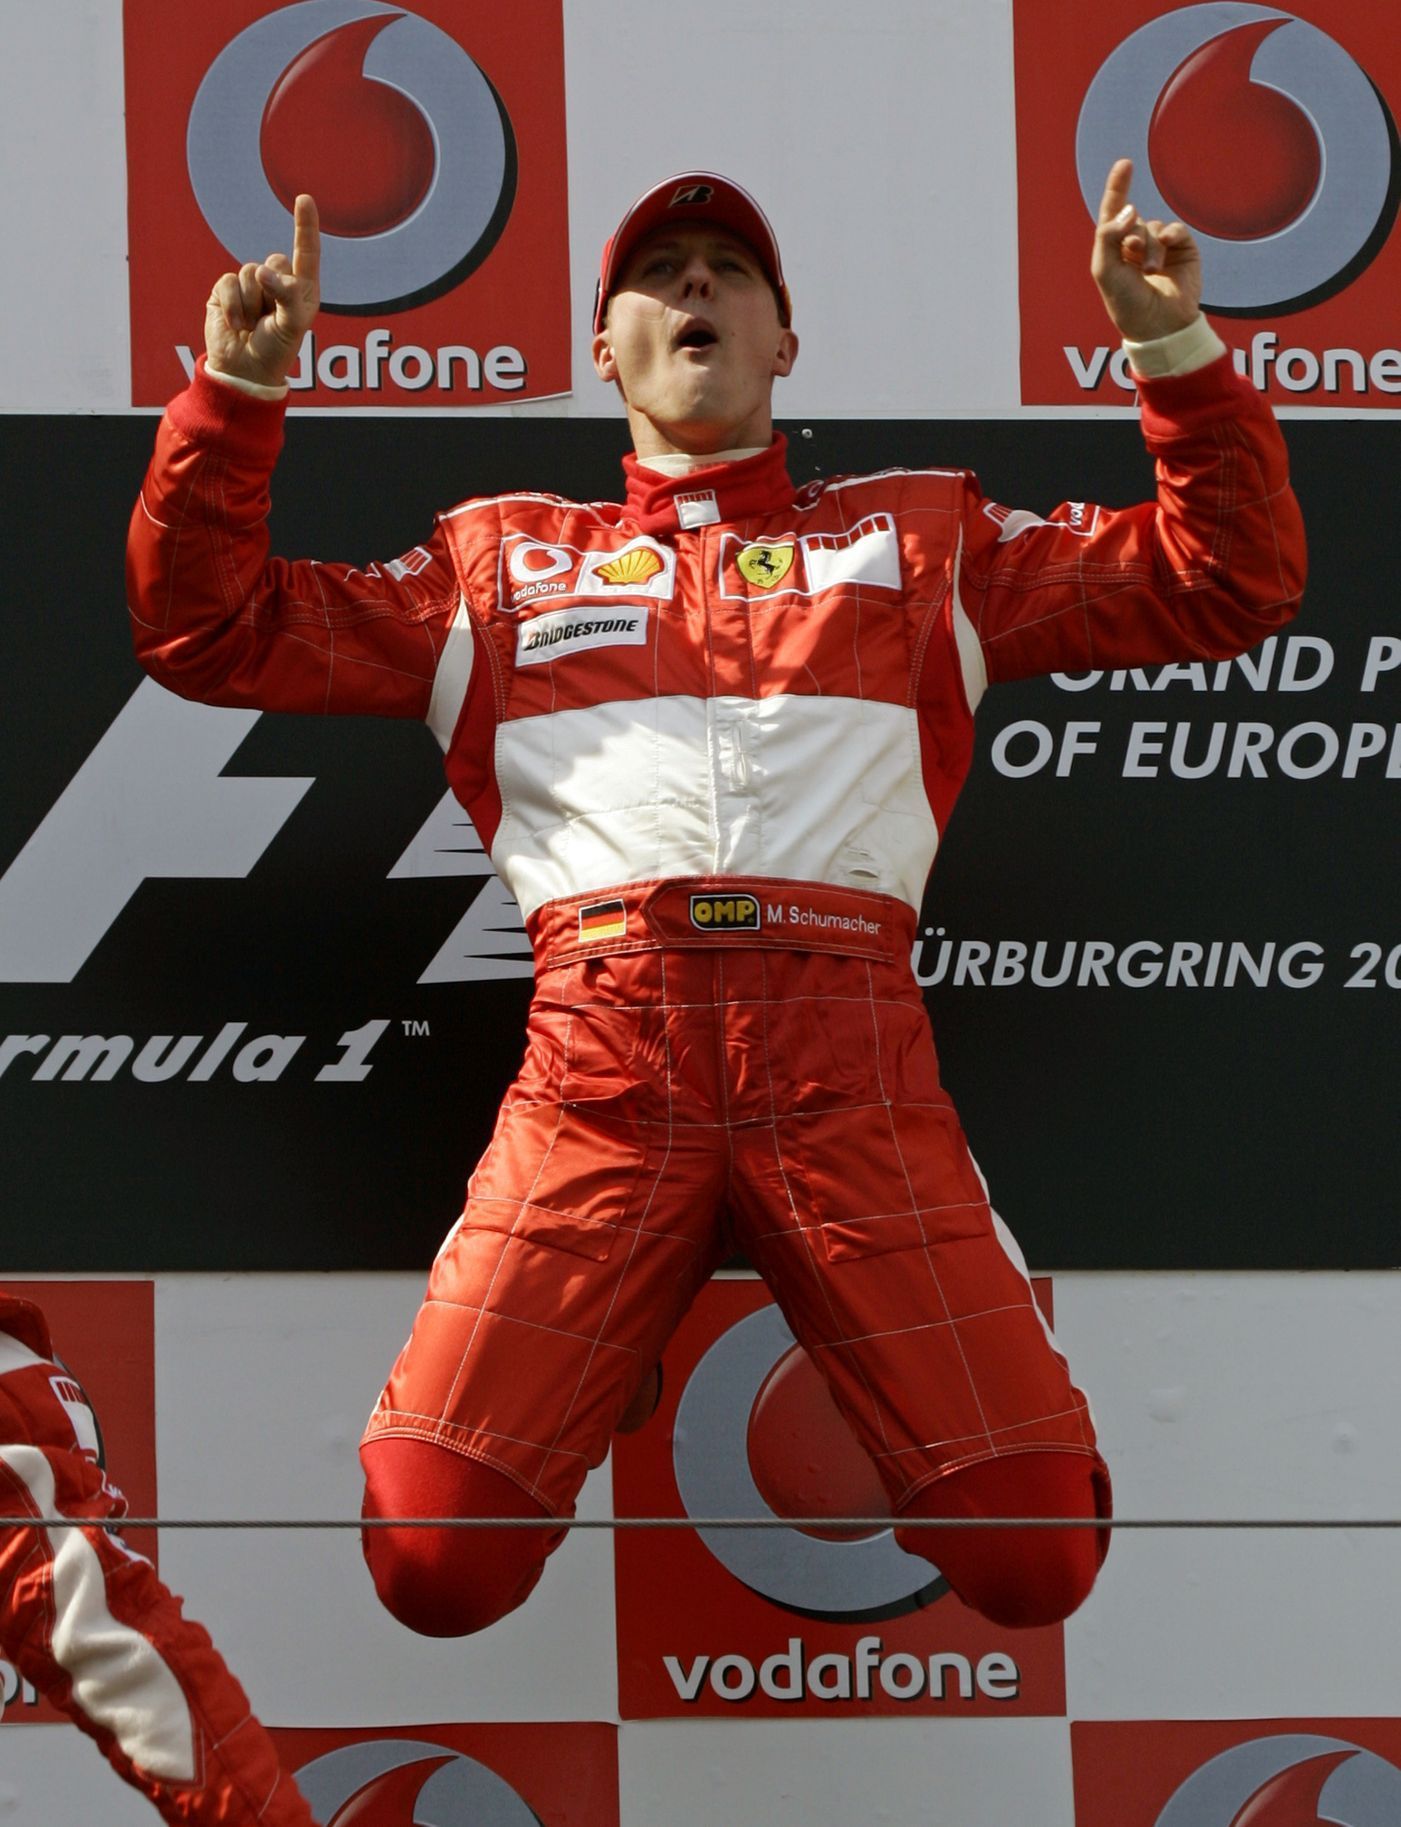 Michael Schumacher z Ferrari slaví vítězství v GP Evropy na Nürburgringu v roce 2006